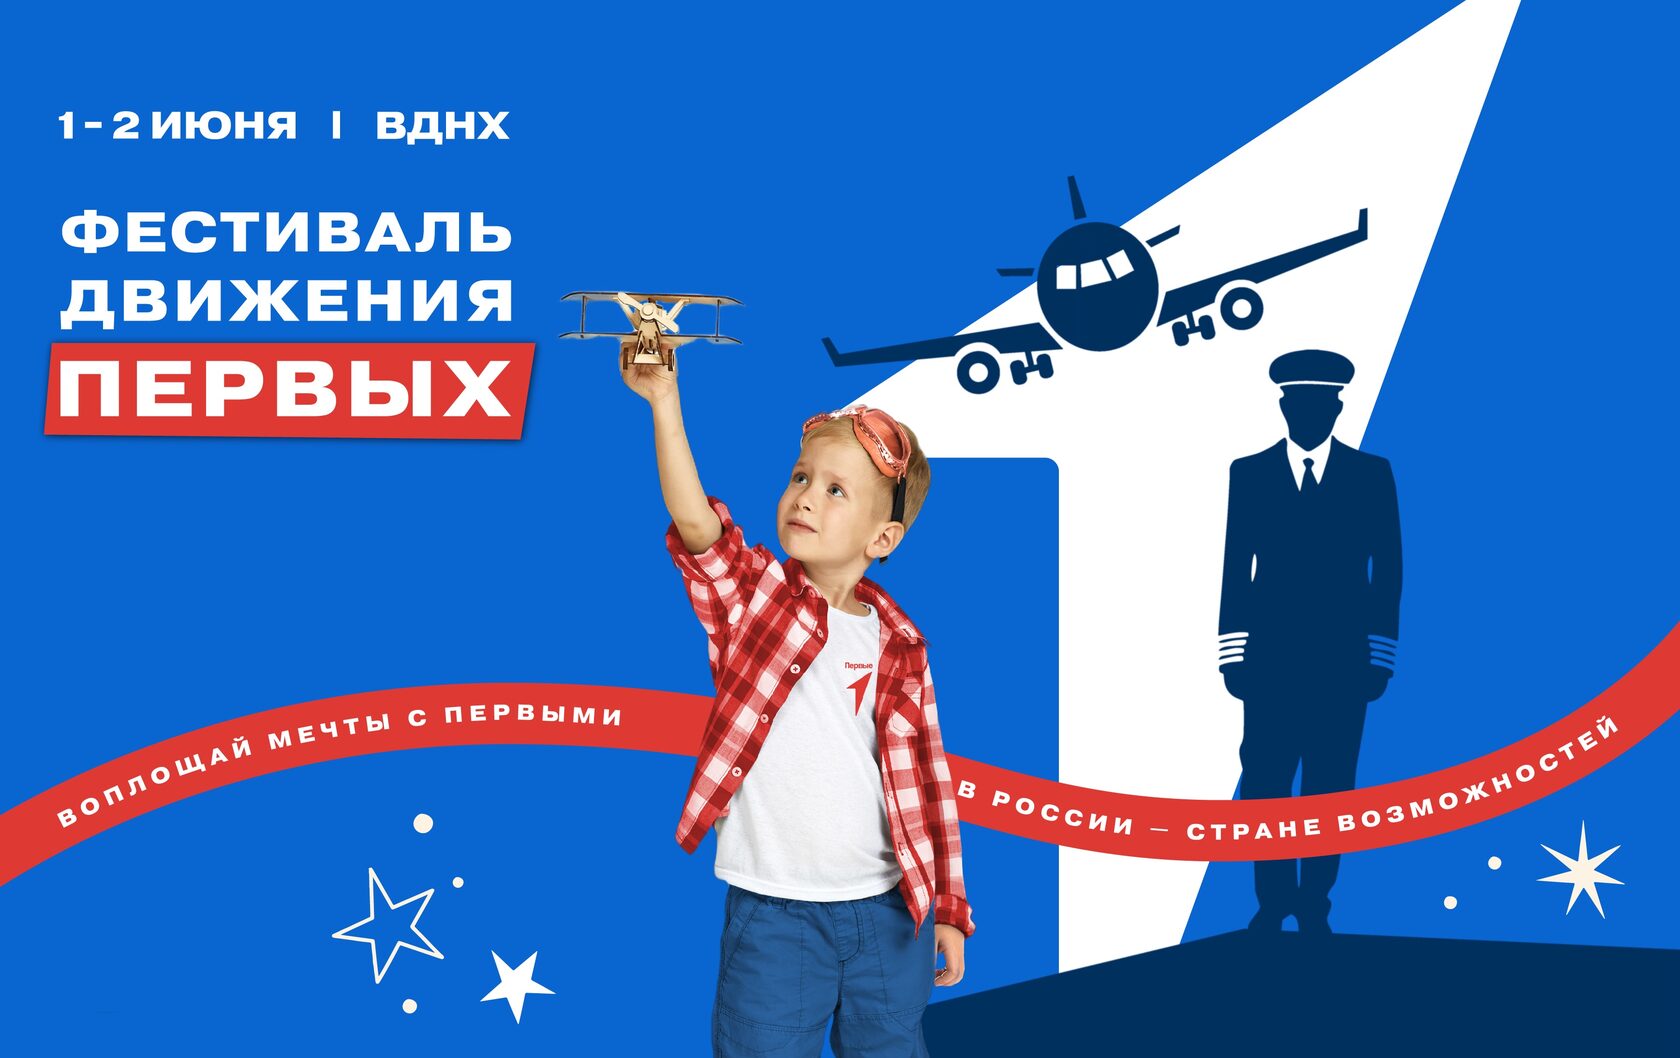 1 и 2 июня в Москве пройдет Фестиваль Движения Первых